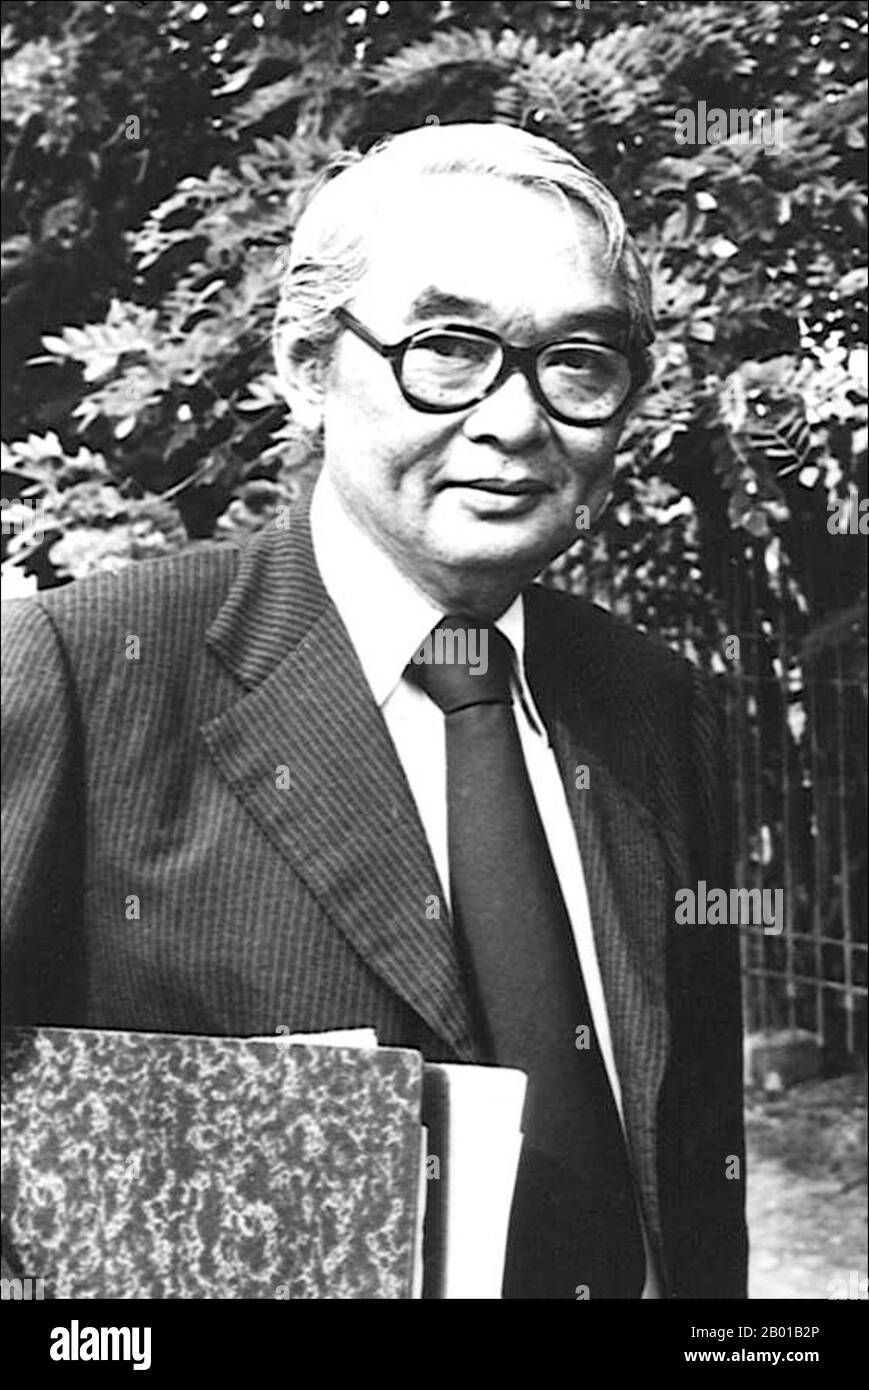 Thailand: Generalmajor Mom Rajawongse Kukrit Pramoj (20. April 1911 - 9. Oktober 1995), 13. Premierminister von Thailand (r. 1975-1976), c. 1970s. Mama Rajawongse (M.R.) Kukrit Pramoj war ein thailändischer Politiker und Gelehrter. Er war Sprecher des Repräsentantenhauses (1973-1974) und von 1975 bis 1976 Premierminister. Von königlicher Abstammung, wurde Kukrit in eine aristokratische Familie geboren und studierte im Ausland. Als Gelehrter schrieb er viele Sachbücher, die von Geschichte und Religion bis zur Astrologie reichten. Am bemerkenswertesten sind seine Epen und viele Kurzgeschichten, die verschiedene Aspekte des zeitgenössischen Lebens darstellen. Stockfoto